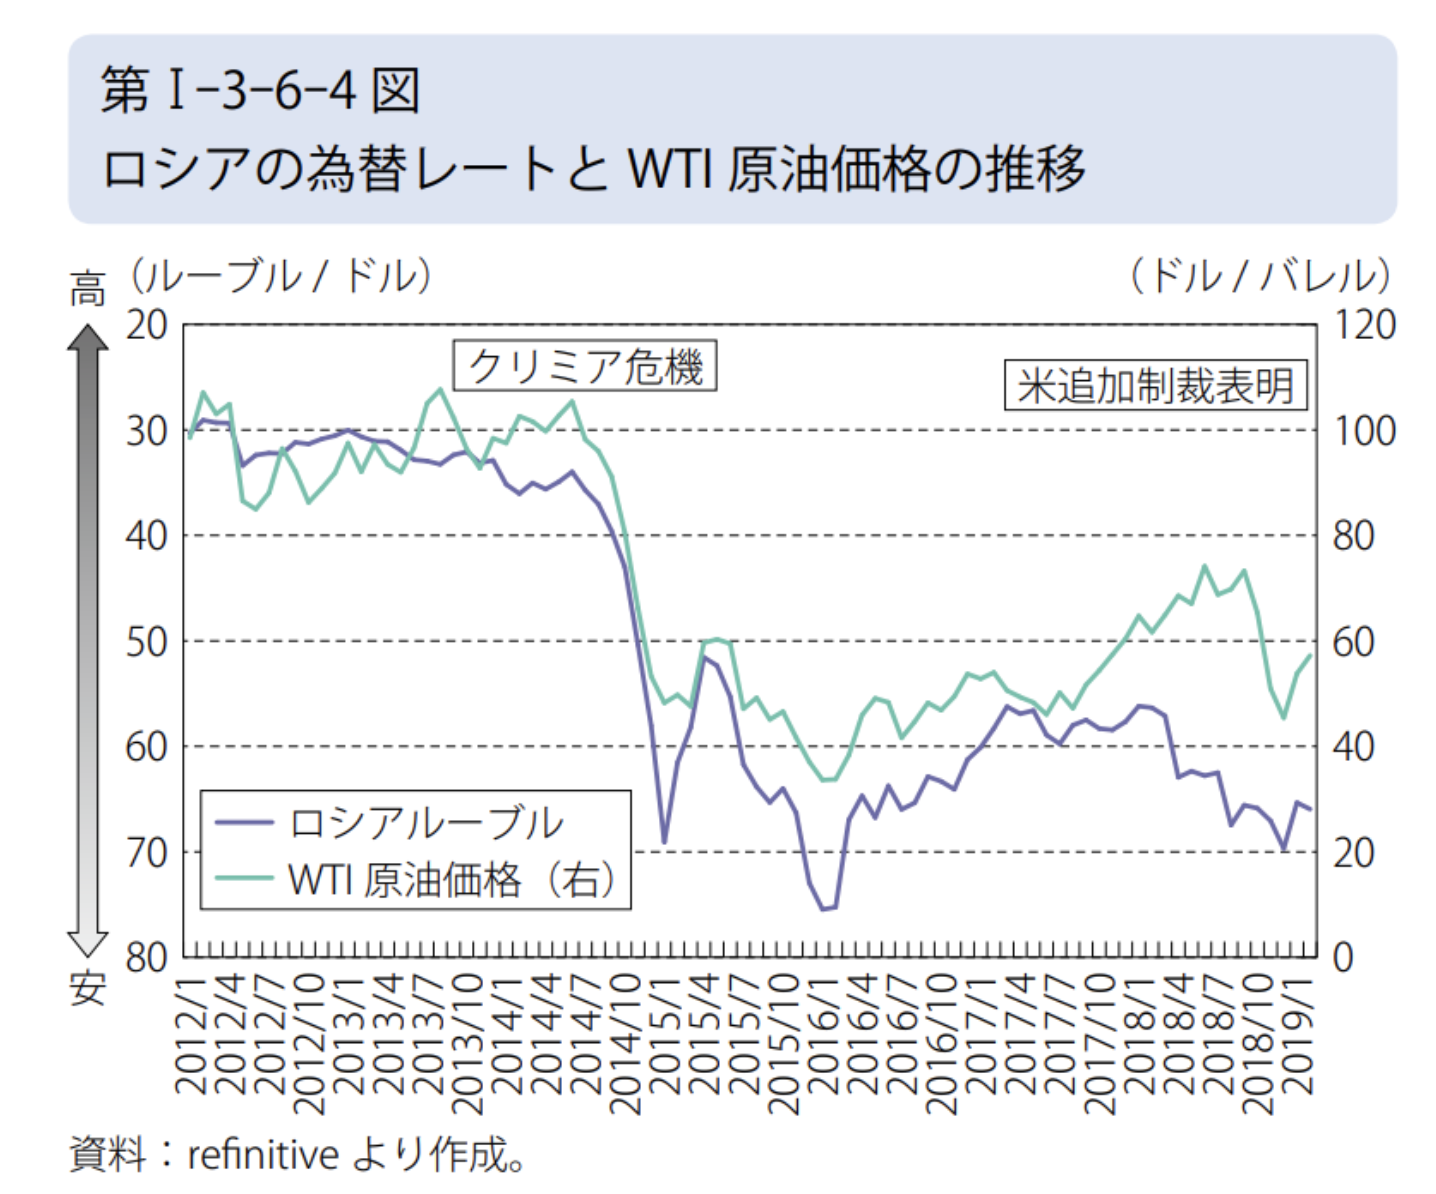 ロシアの為替レートとWTI原油価格の推移